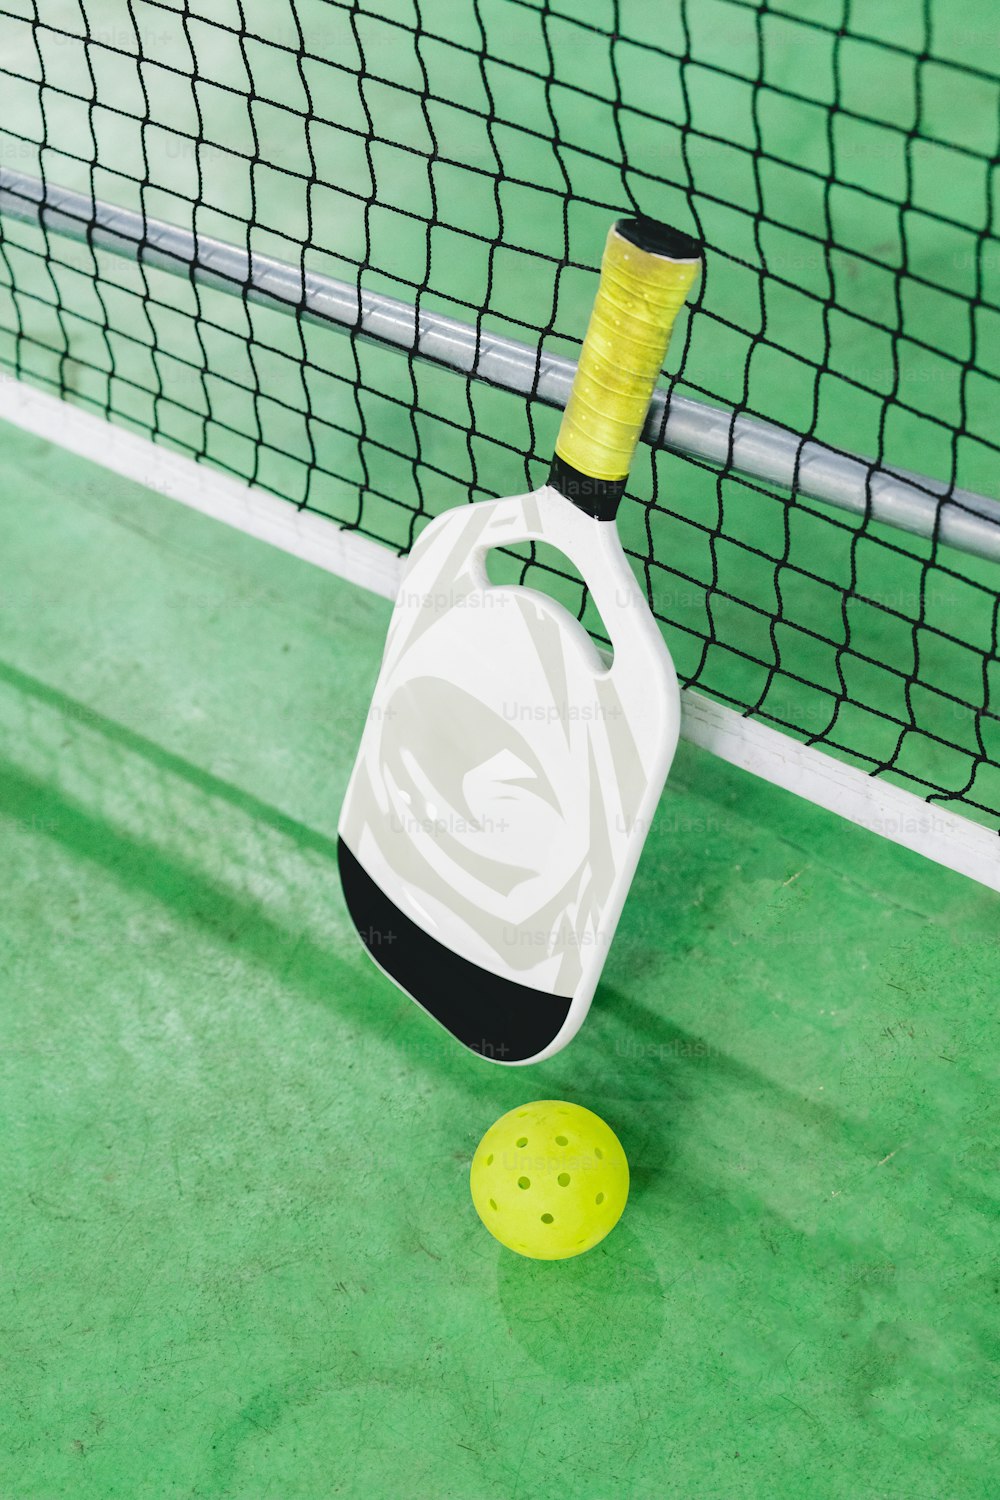 코트 위의 테니스 라켓과 공